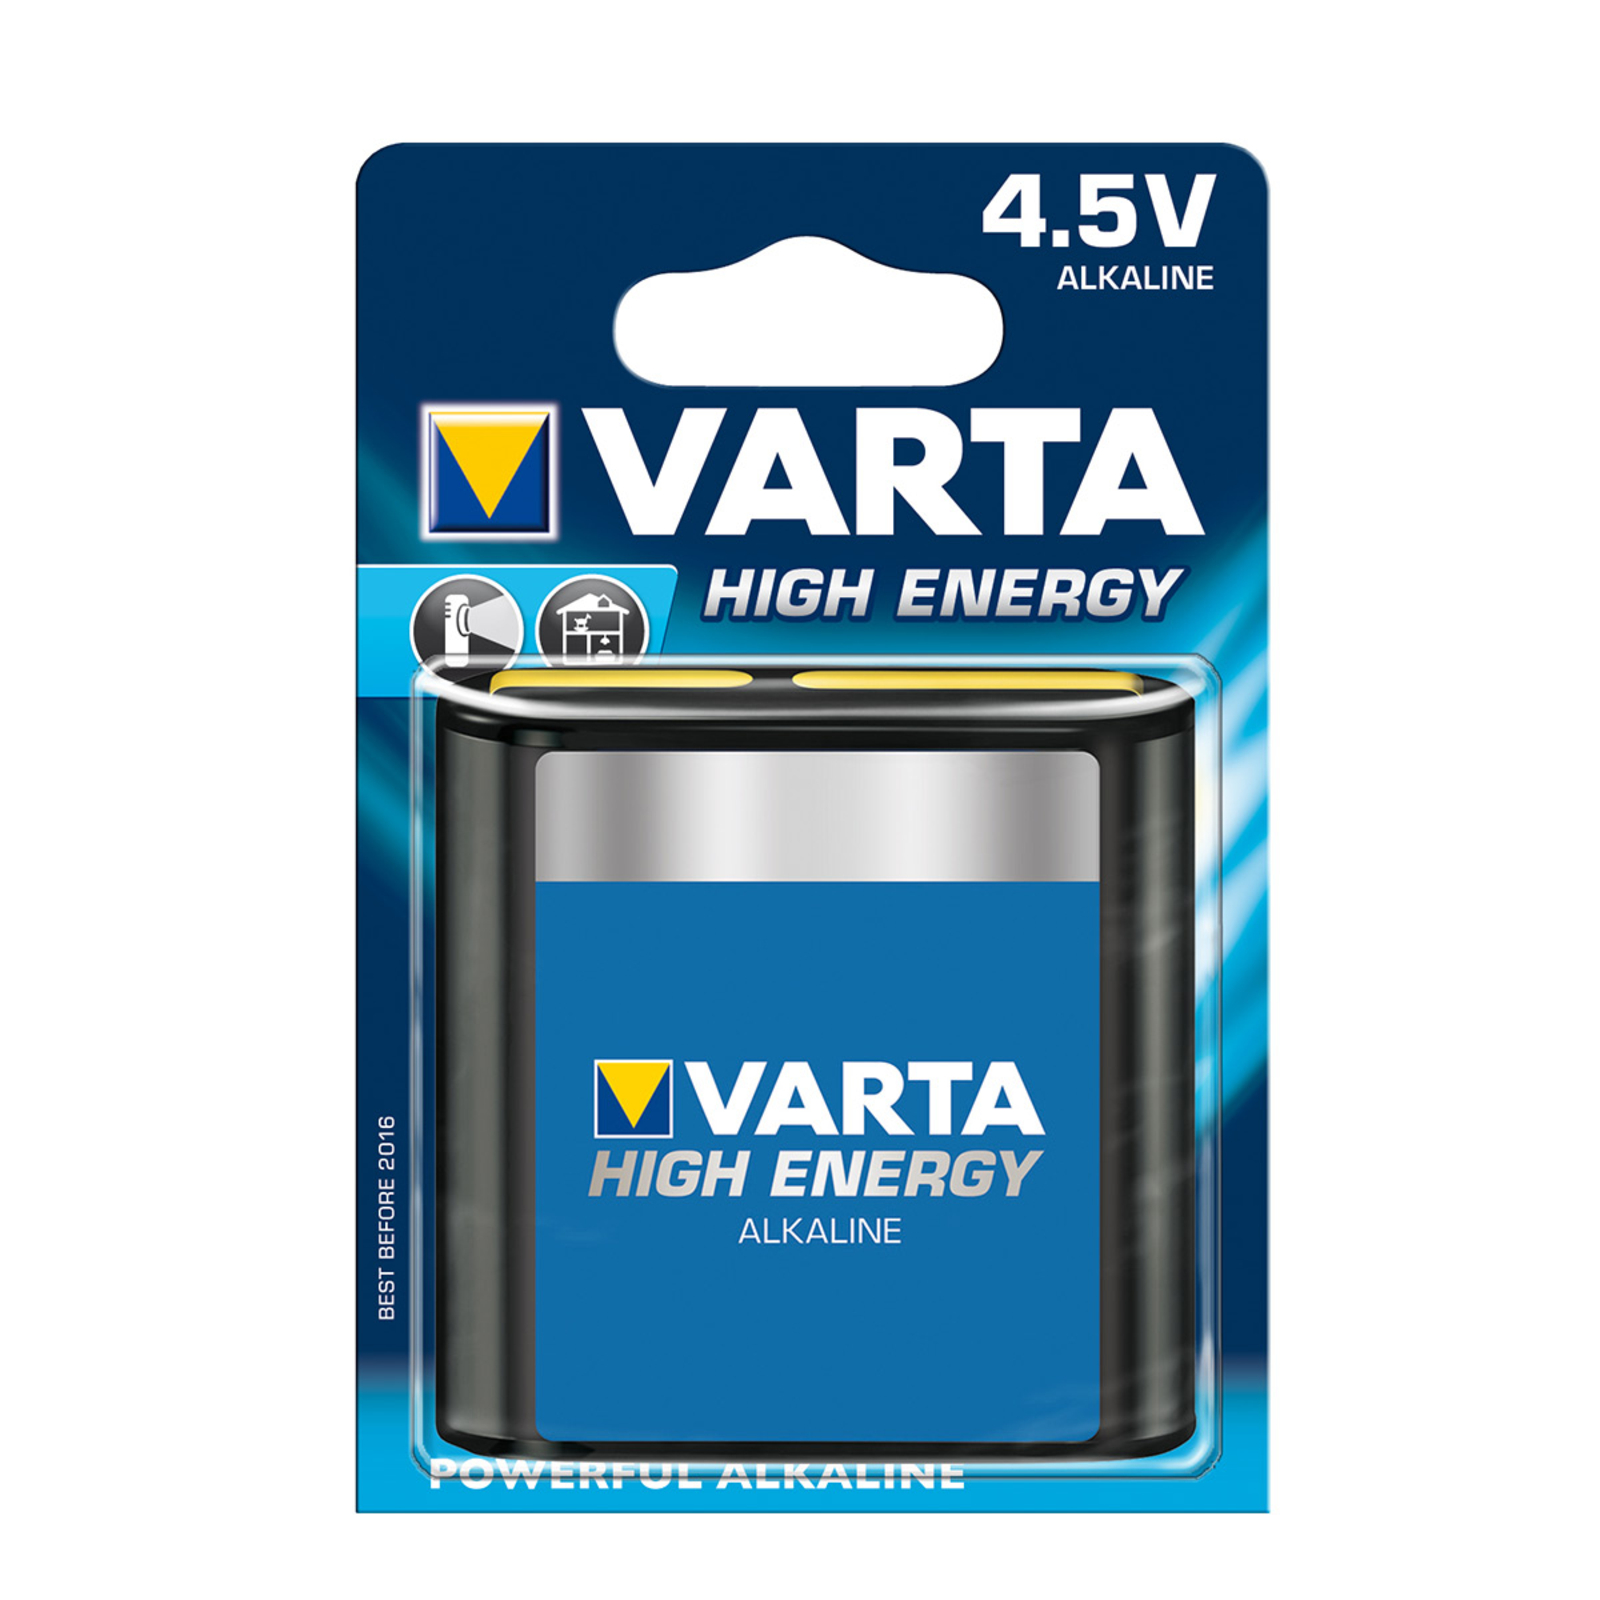 High Energy 4,5V Batterie für Flachleuchten